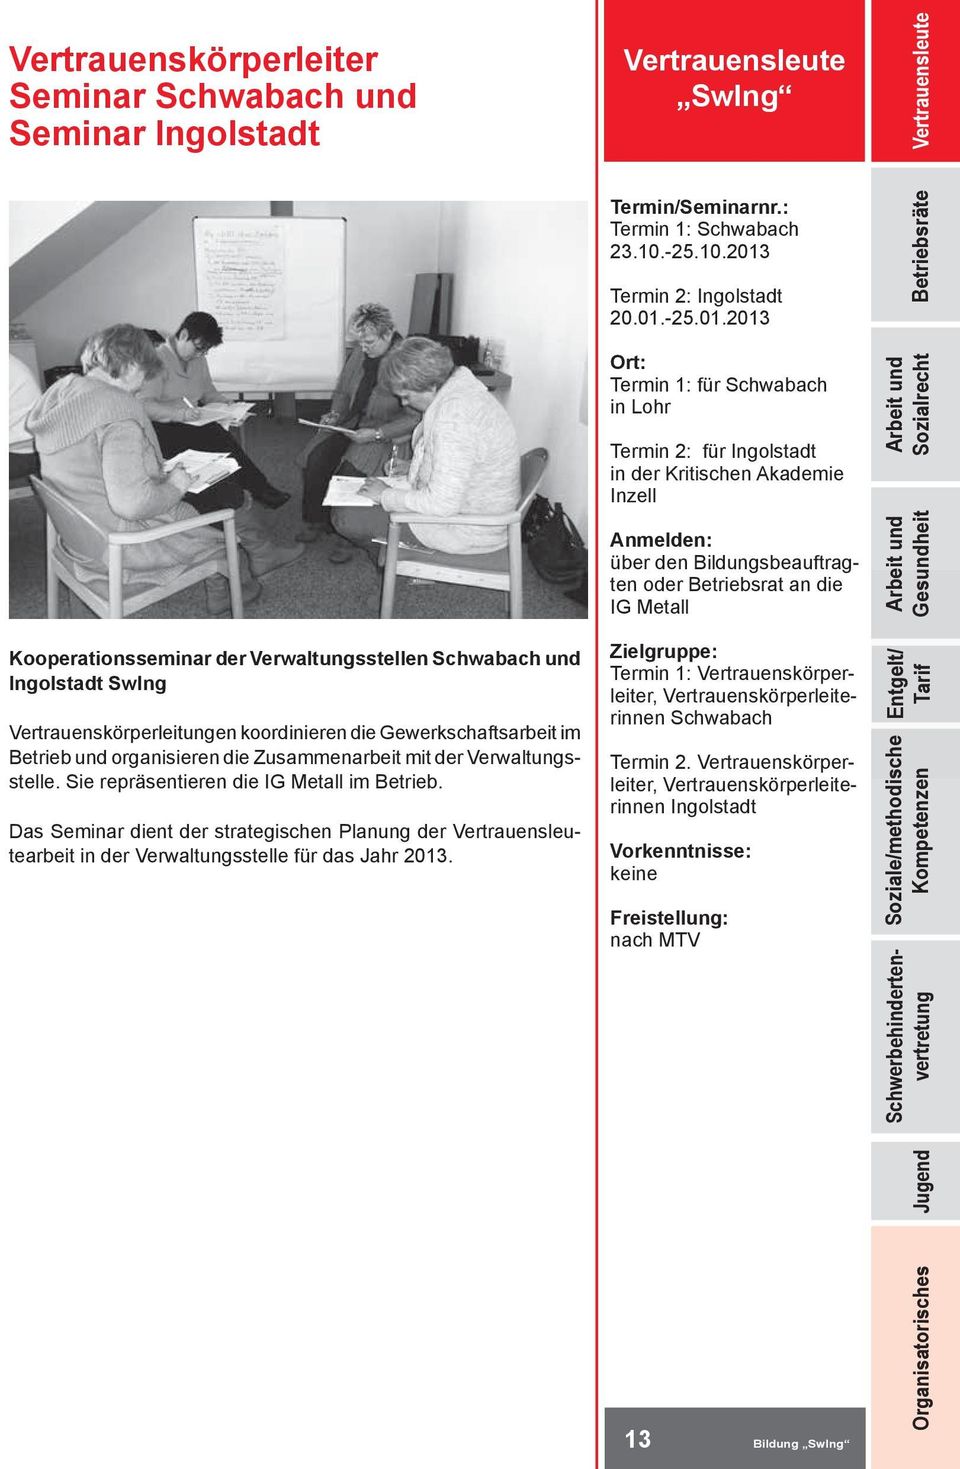 Das Seminar dient der strategischen Planung der Vertrauensleutearbeit in der Verwaltungsstelle für das Jahr 2013. Vertrauensleute SwIng Termin 1: Schwabach 23.10.-25.10.2013 Termin 2: Ingolstadt 20.